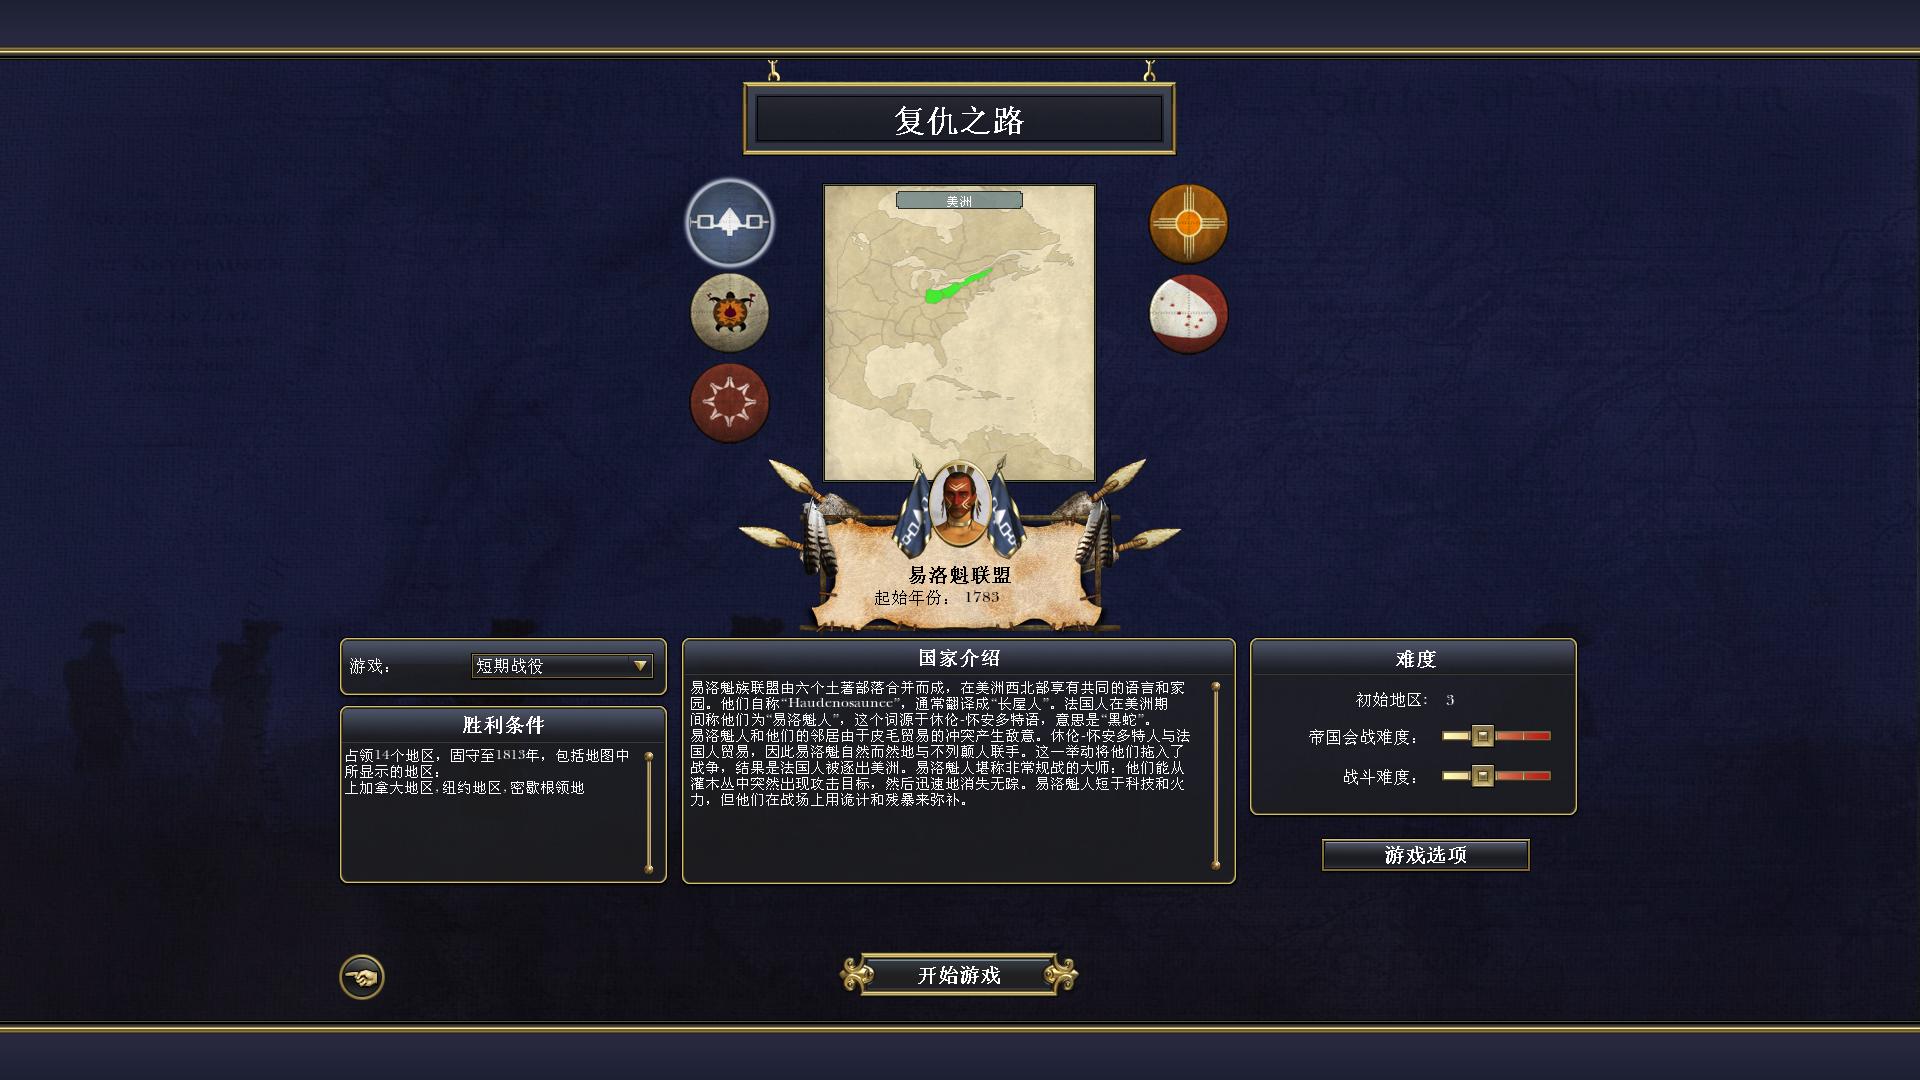 帝国：全面战争 免安装绿色中文版